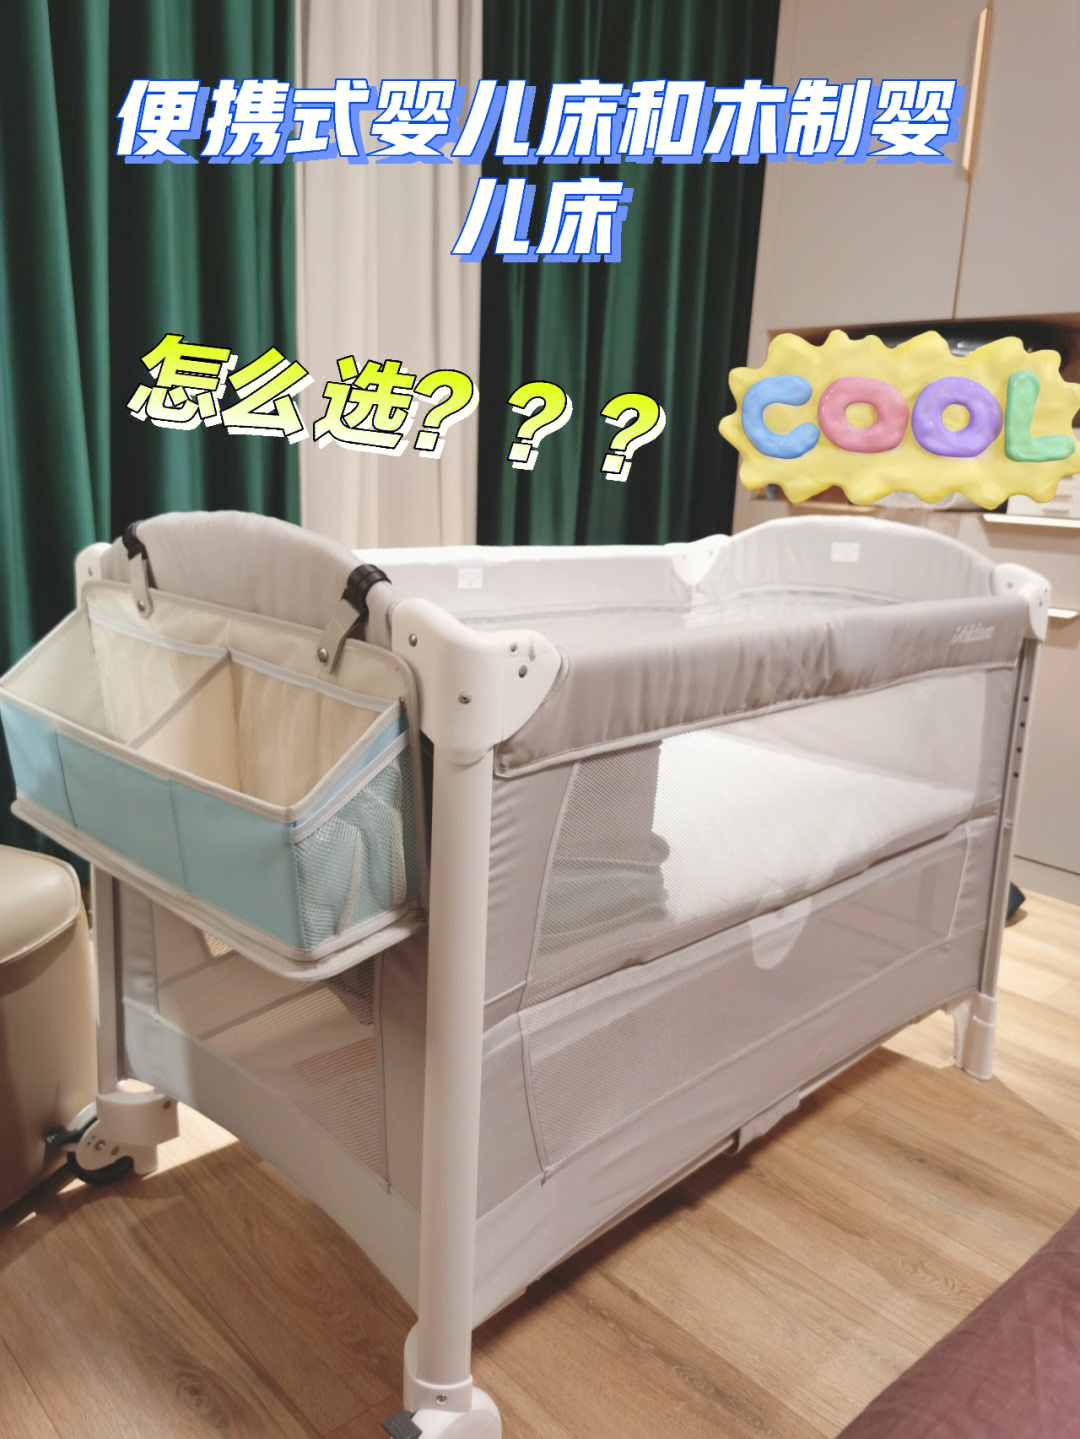 婴儿床怎么安装图解图片